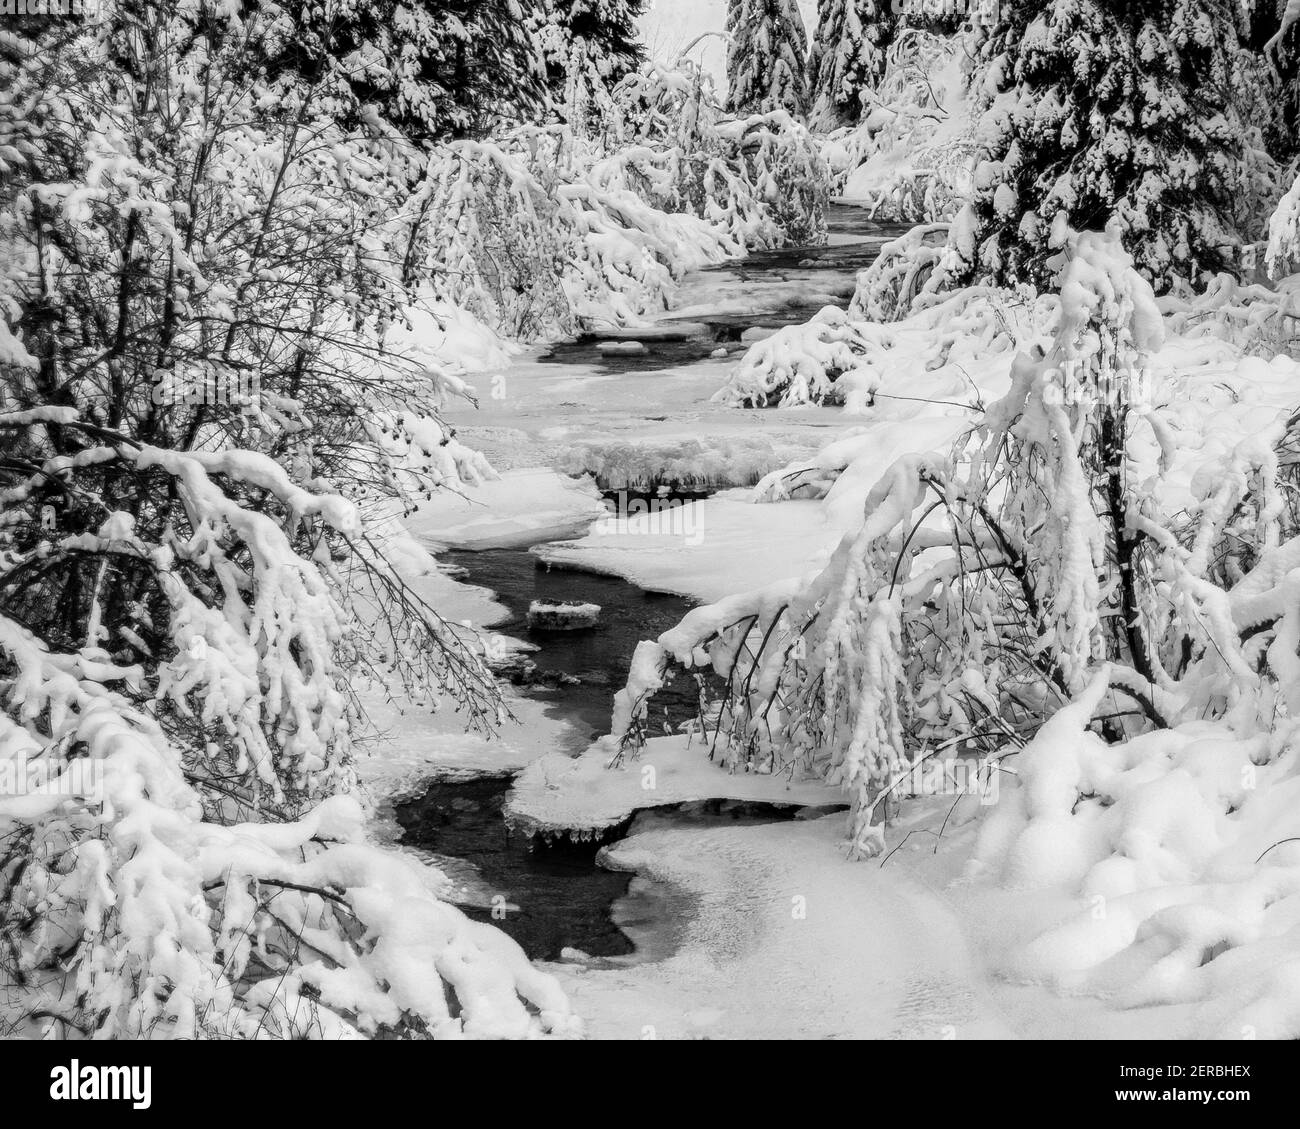 Las nevadas frescas cubren el hielo y la vegetación a lo largo de Mores Creek al norte de Idaho City, Idaho. Foto de stock